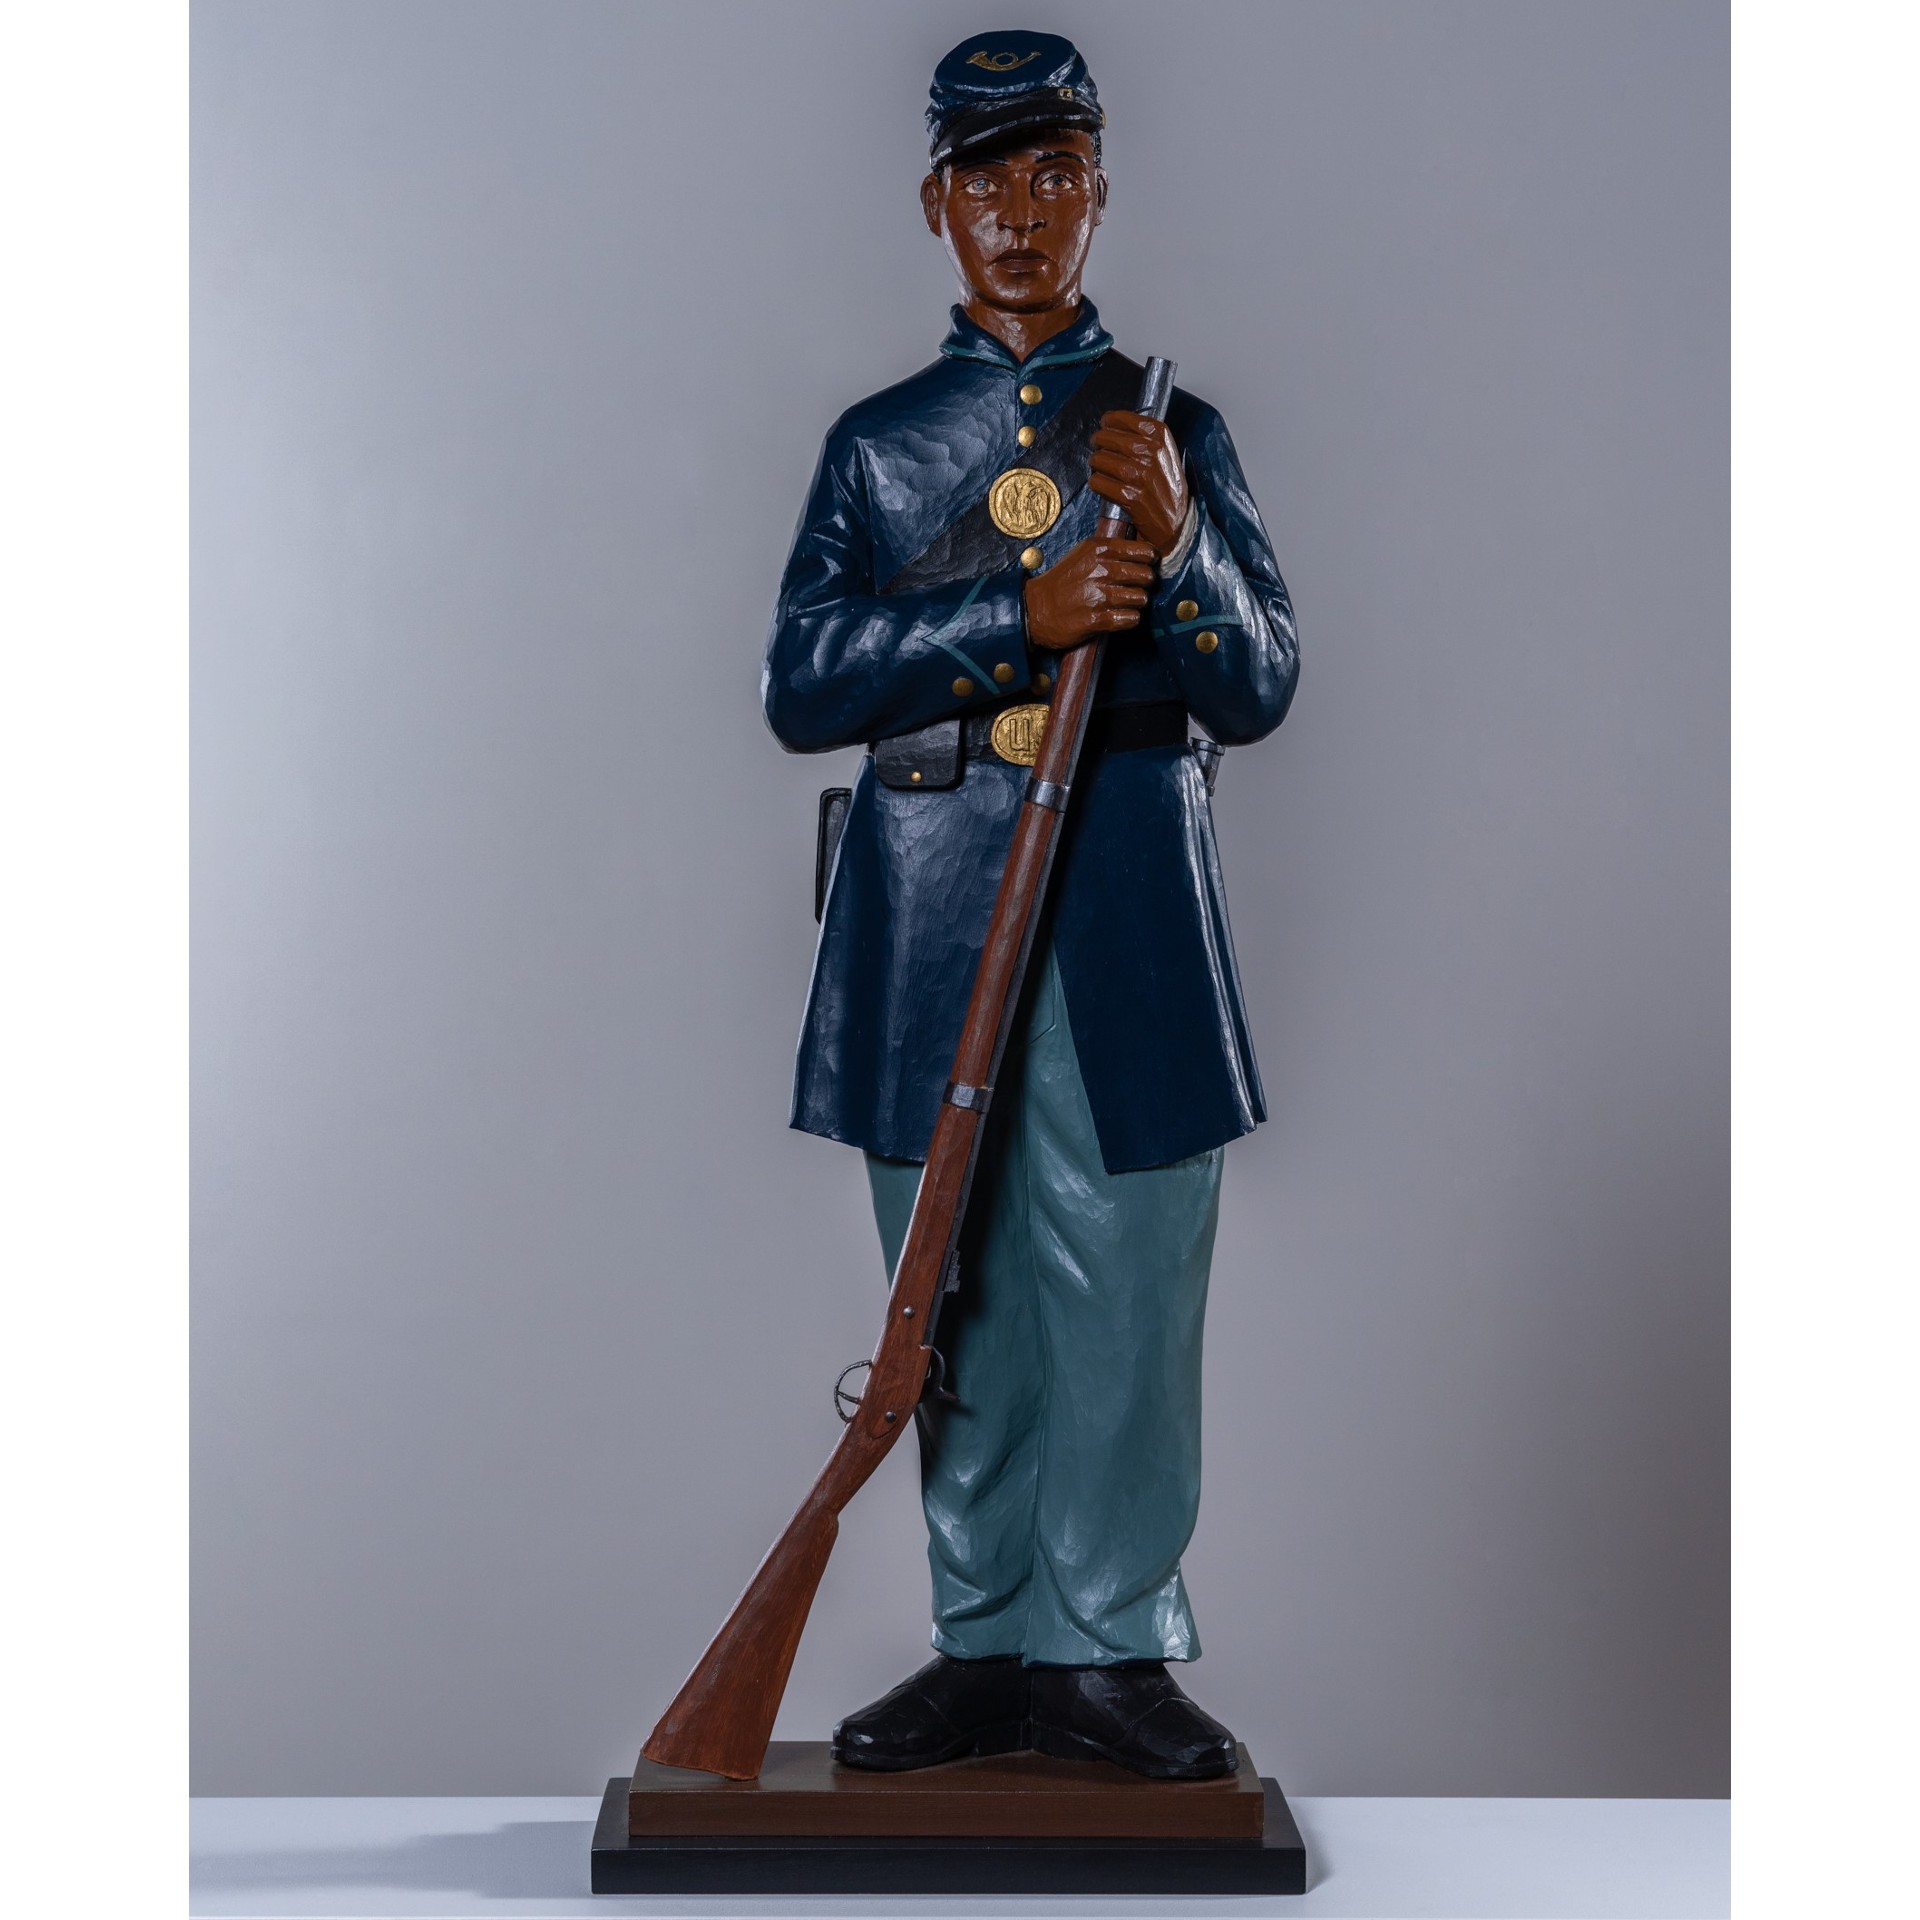 carved Civil War soldier rel=